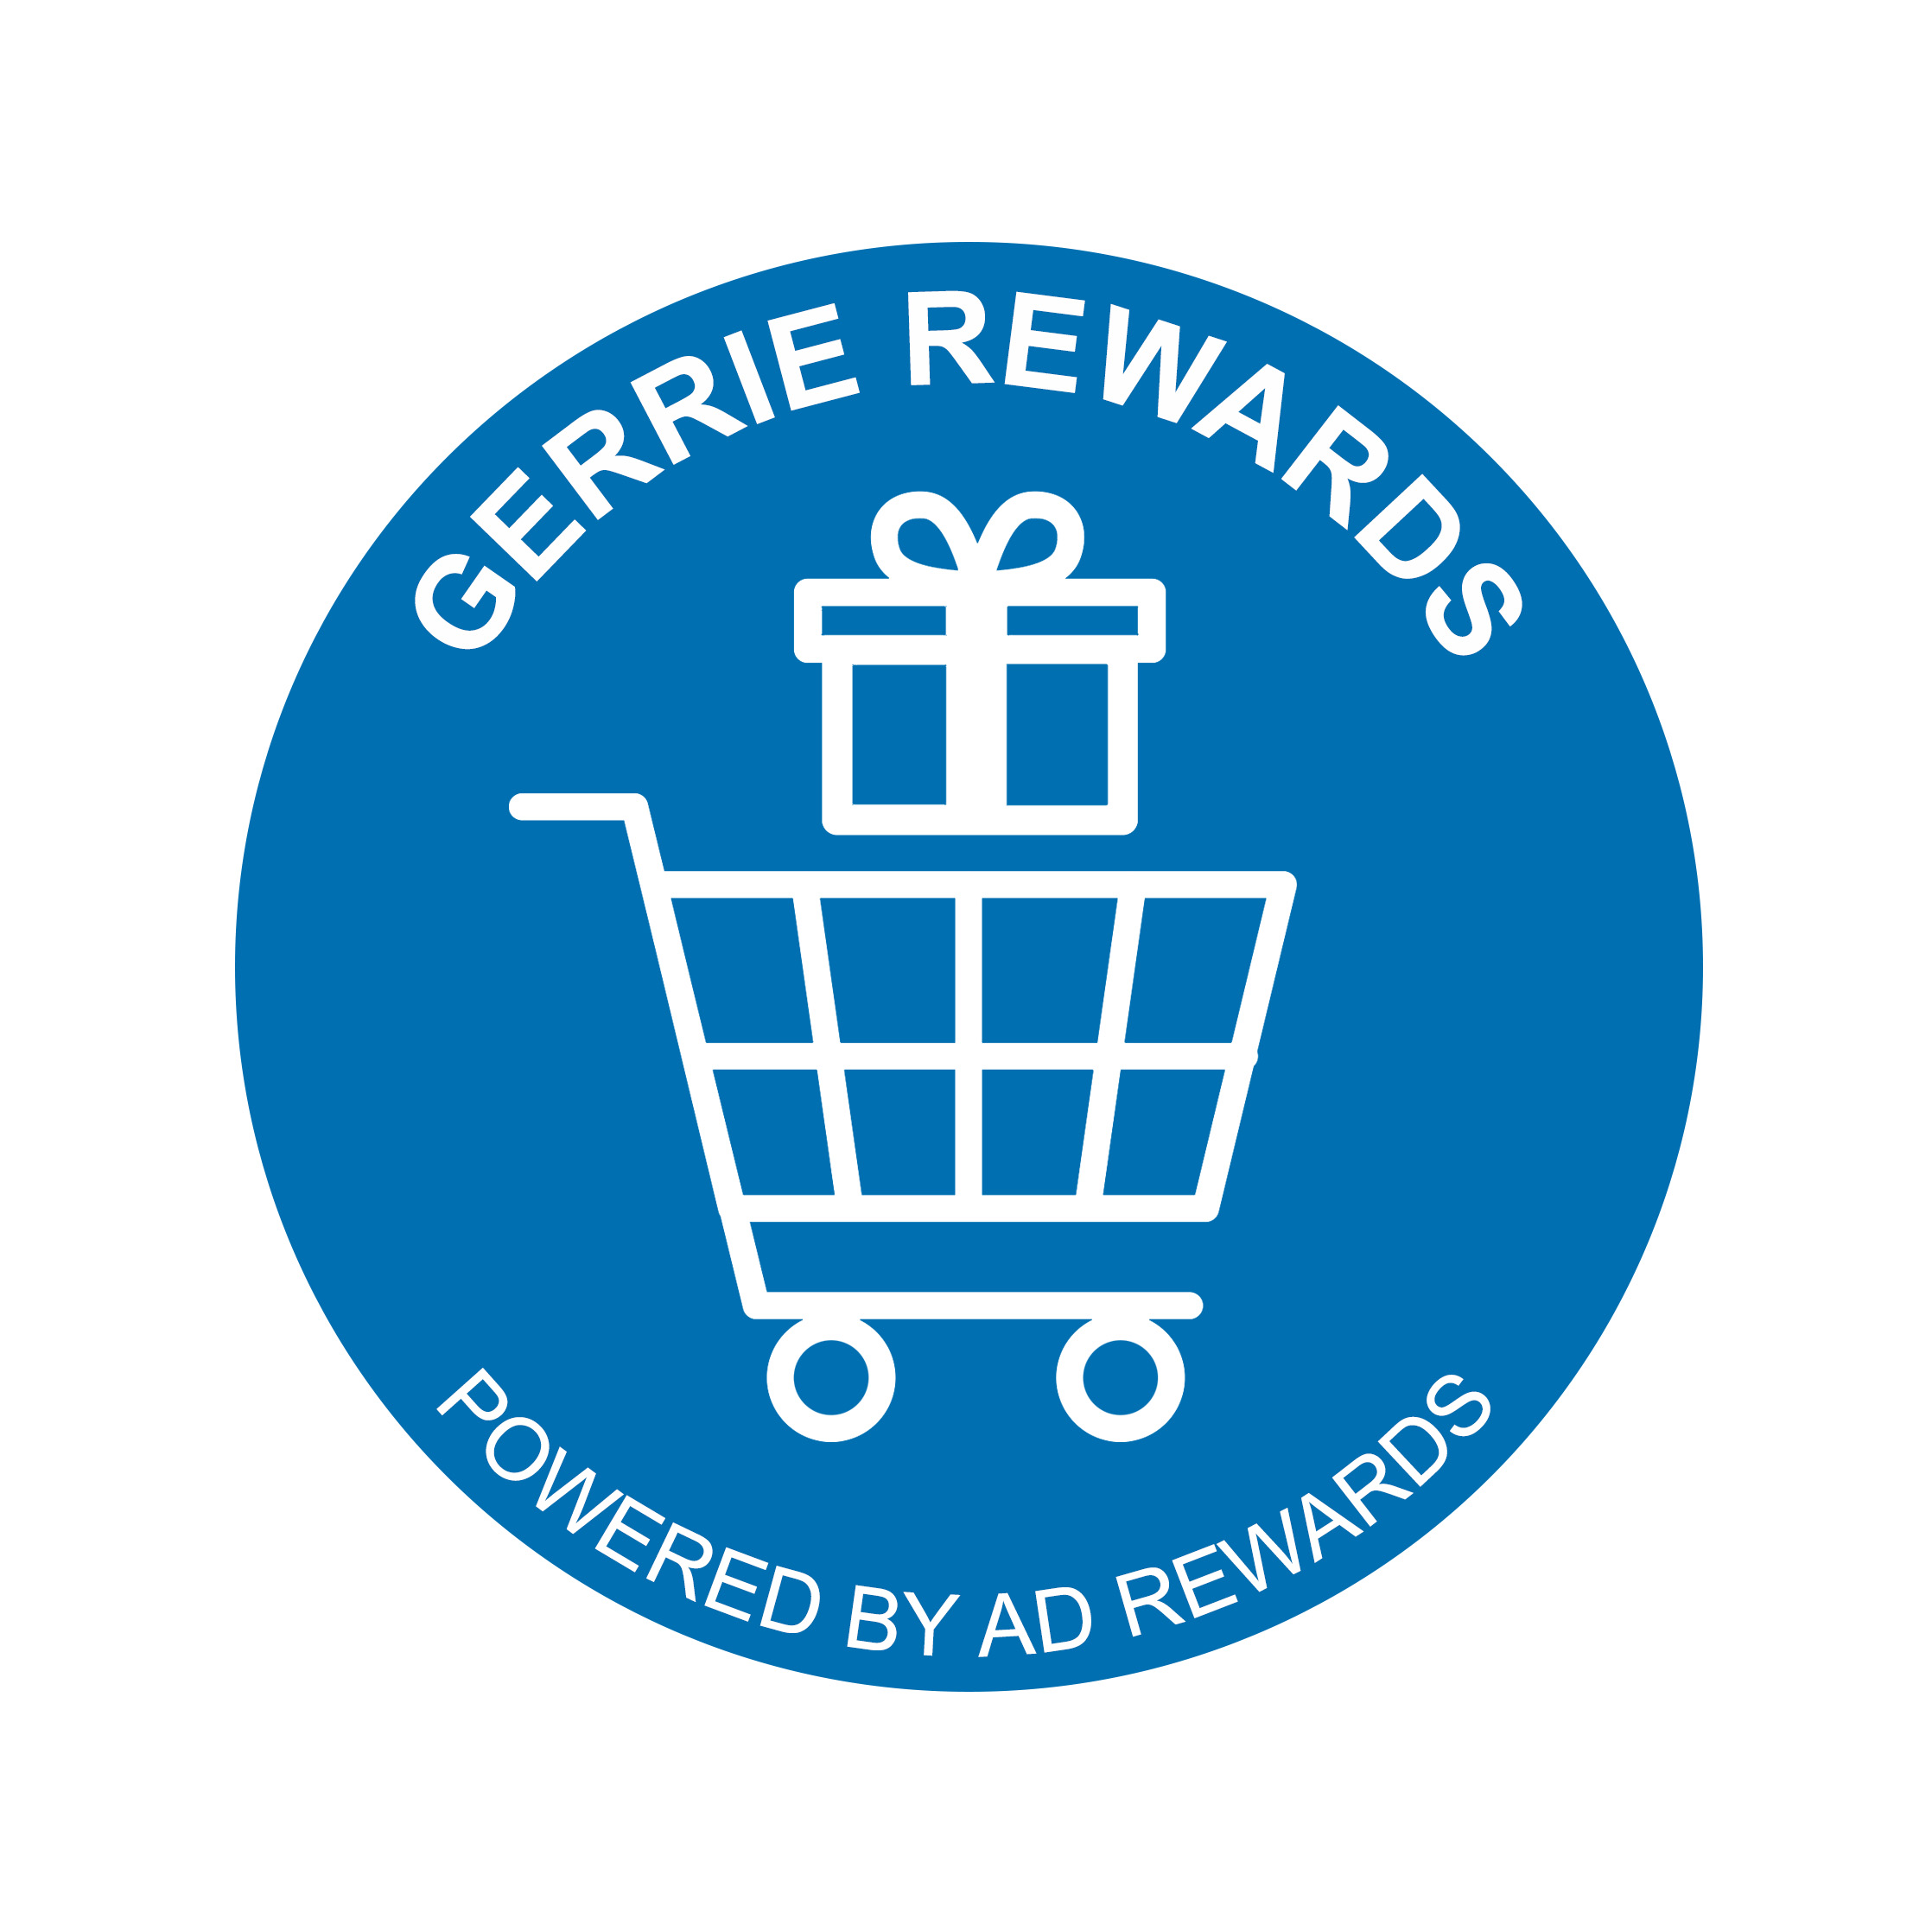 Gerrie Reward Points